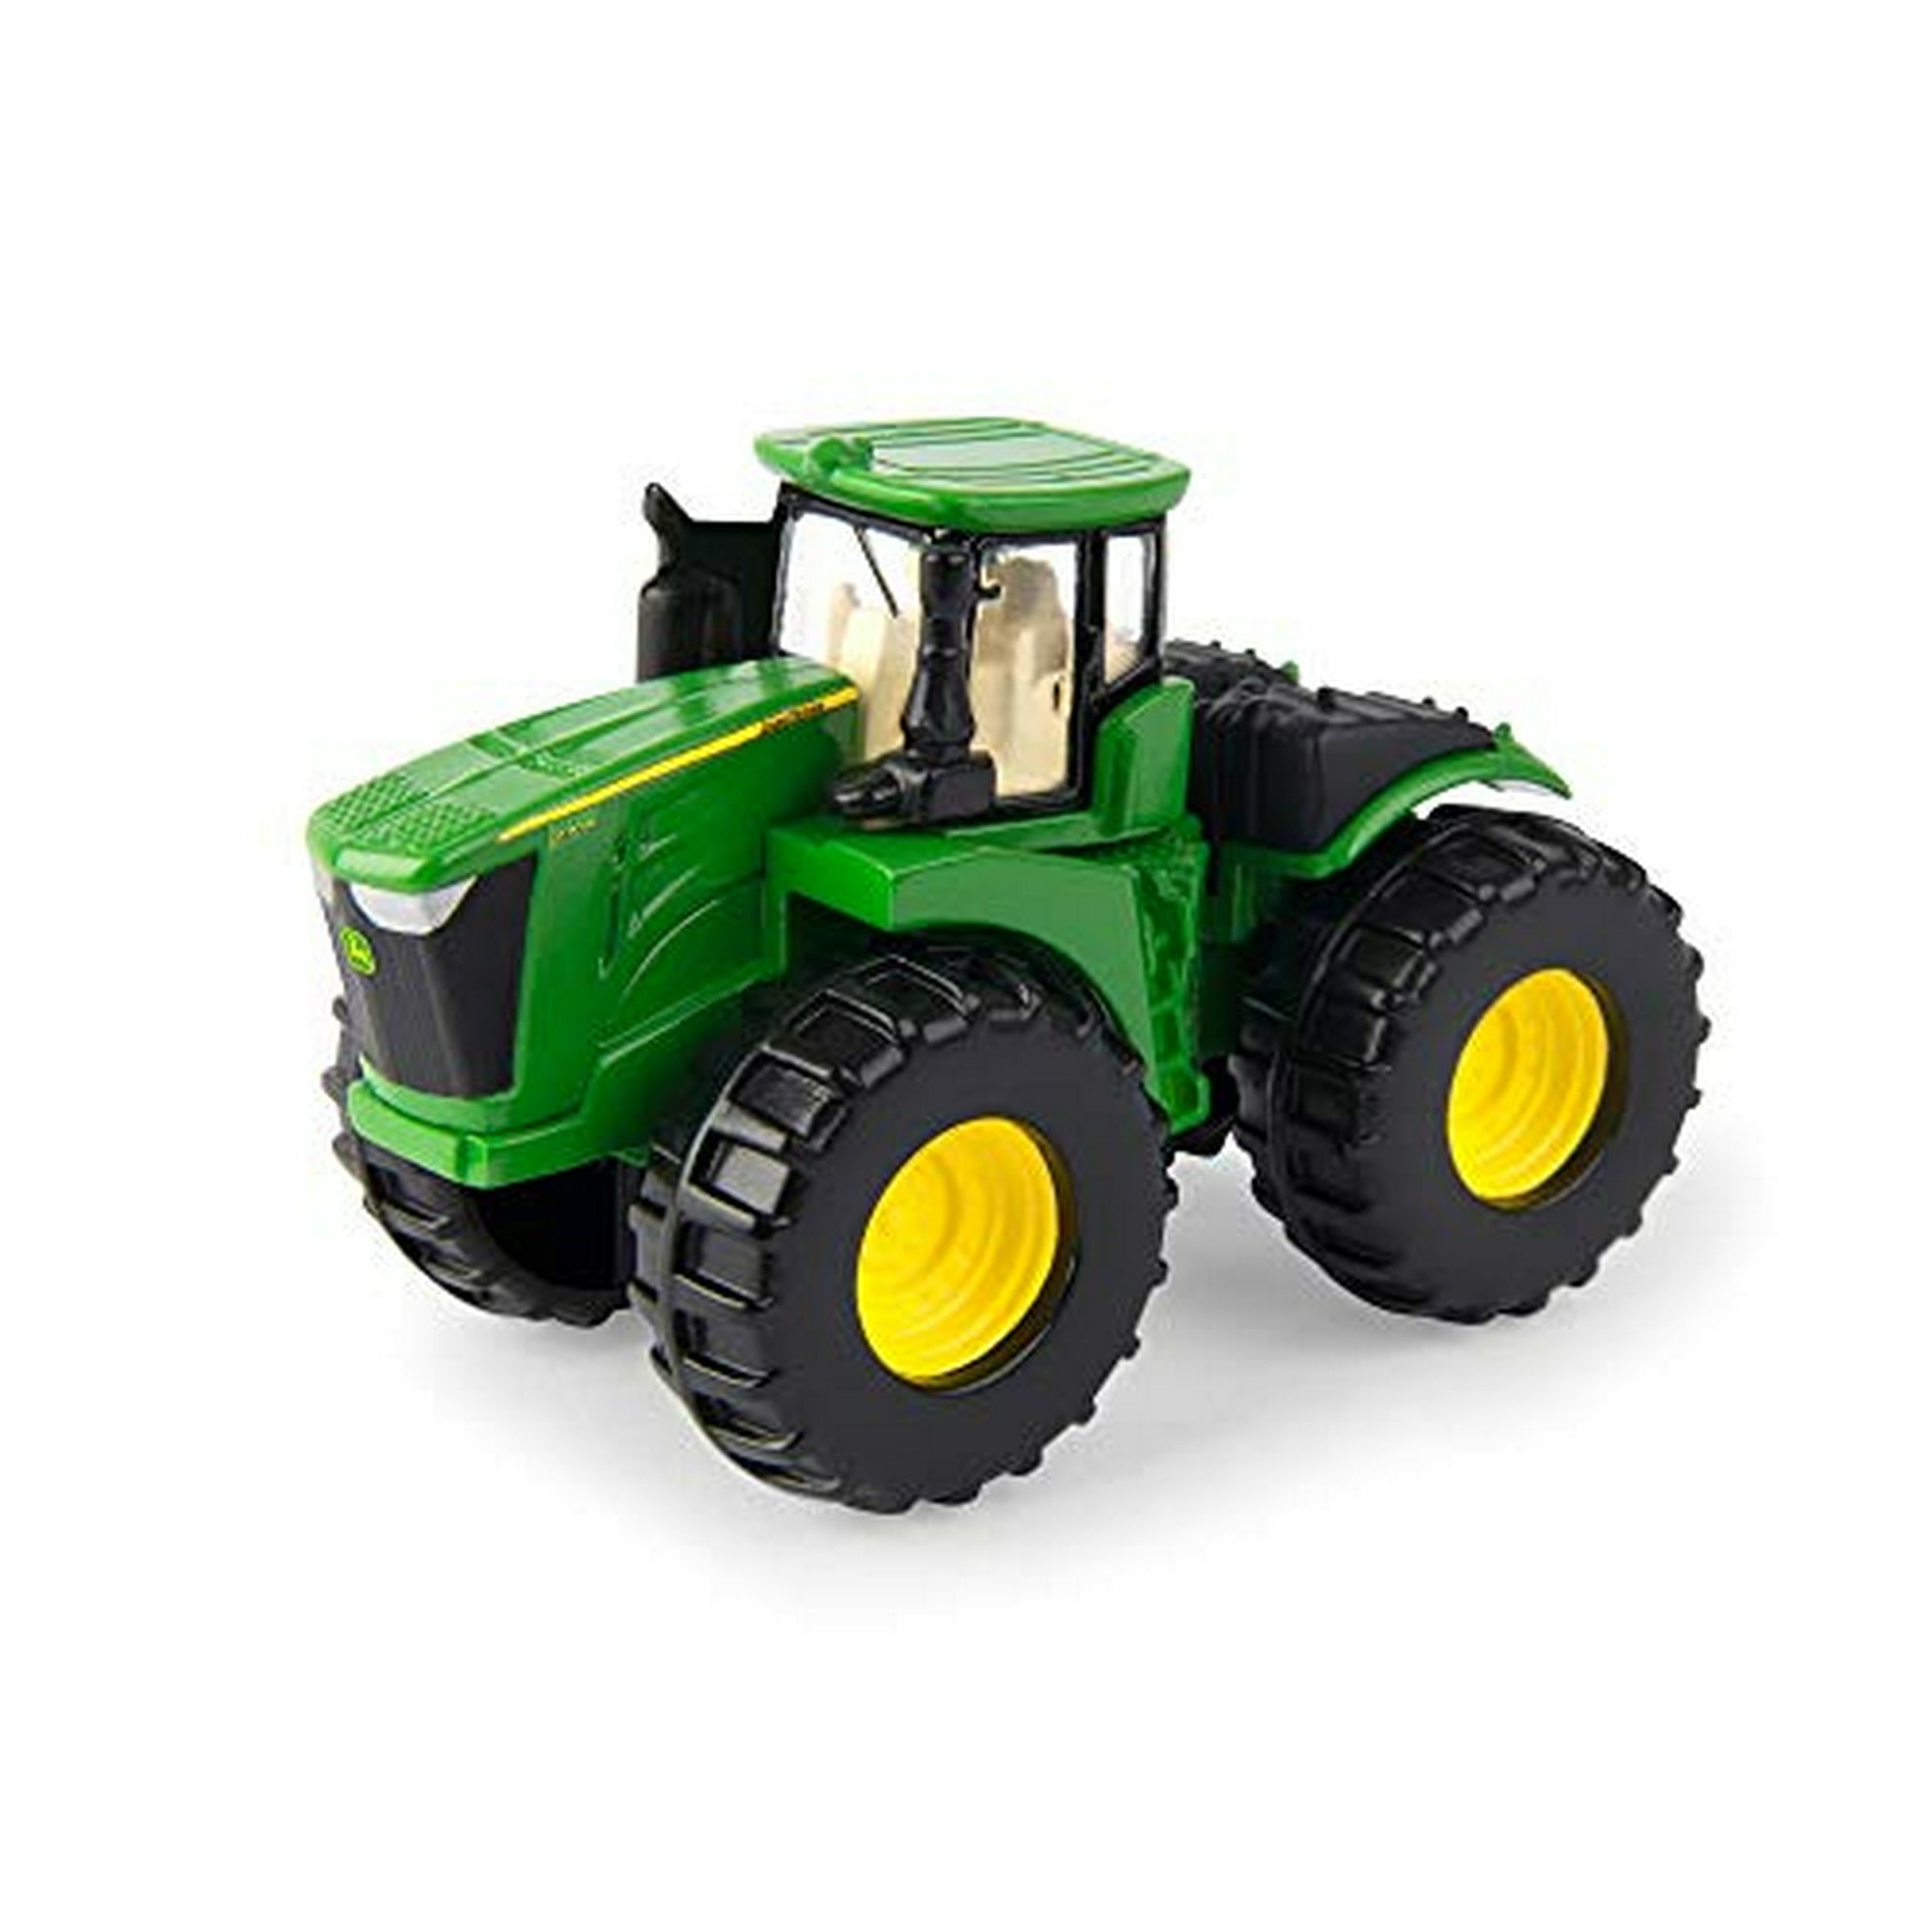 ERTL Iron John Deere Tractor Toy 3-Pack - Incluye Tractores John Deere  9620R, 4020 y 4960, John Deere John Deere